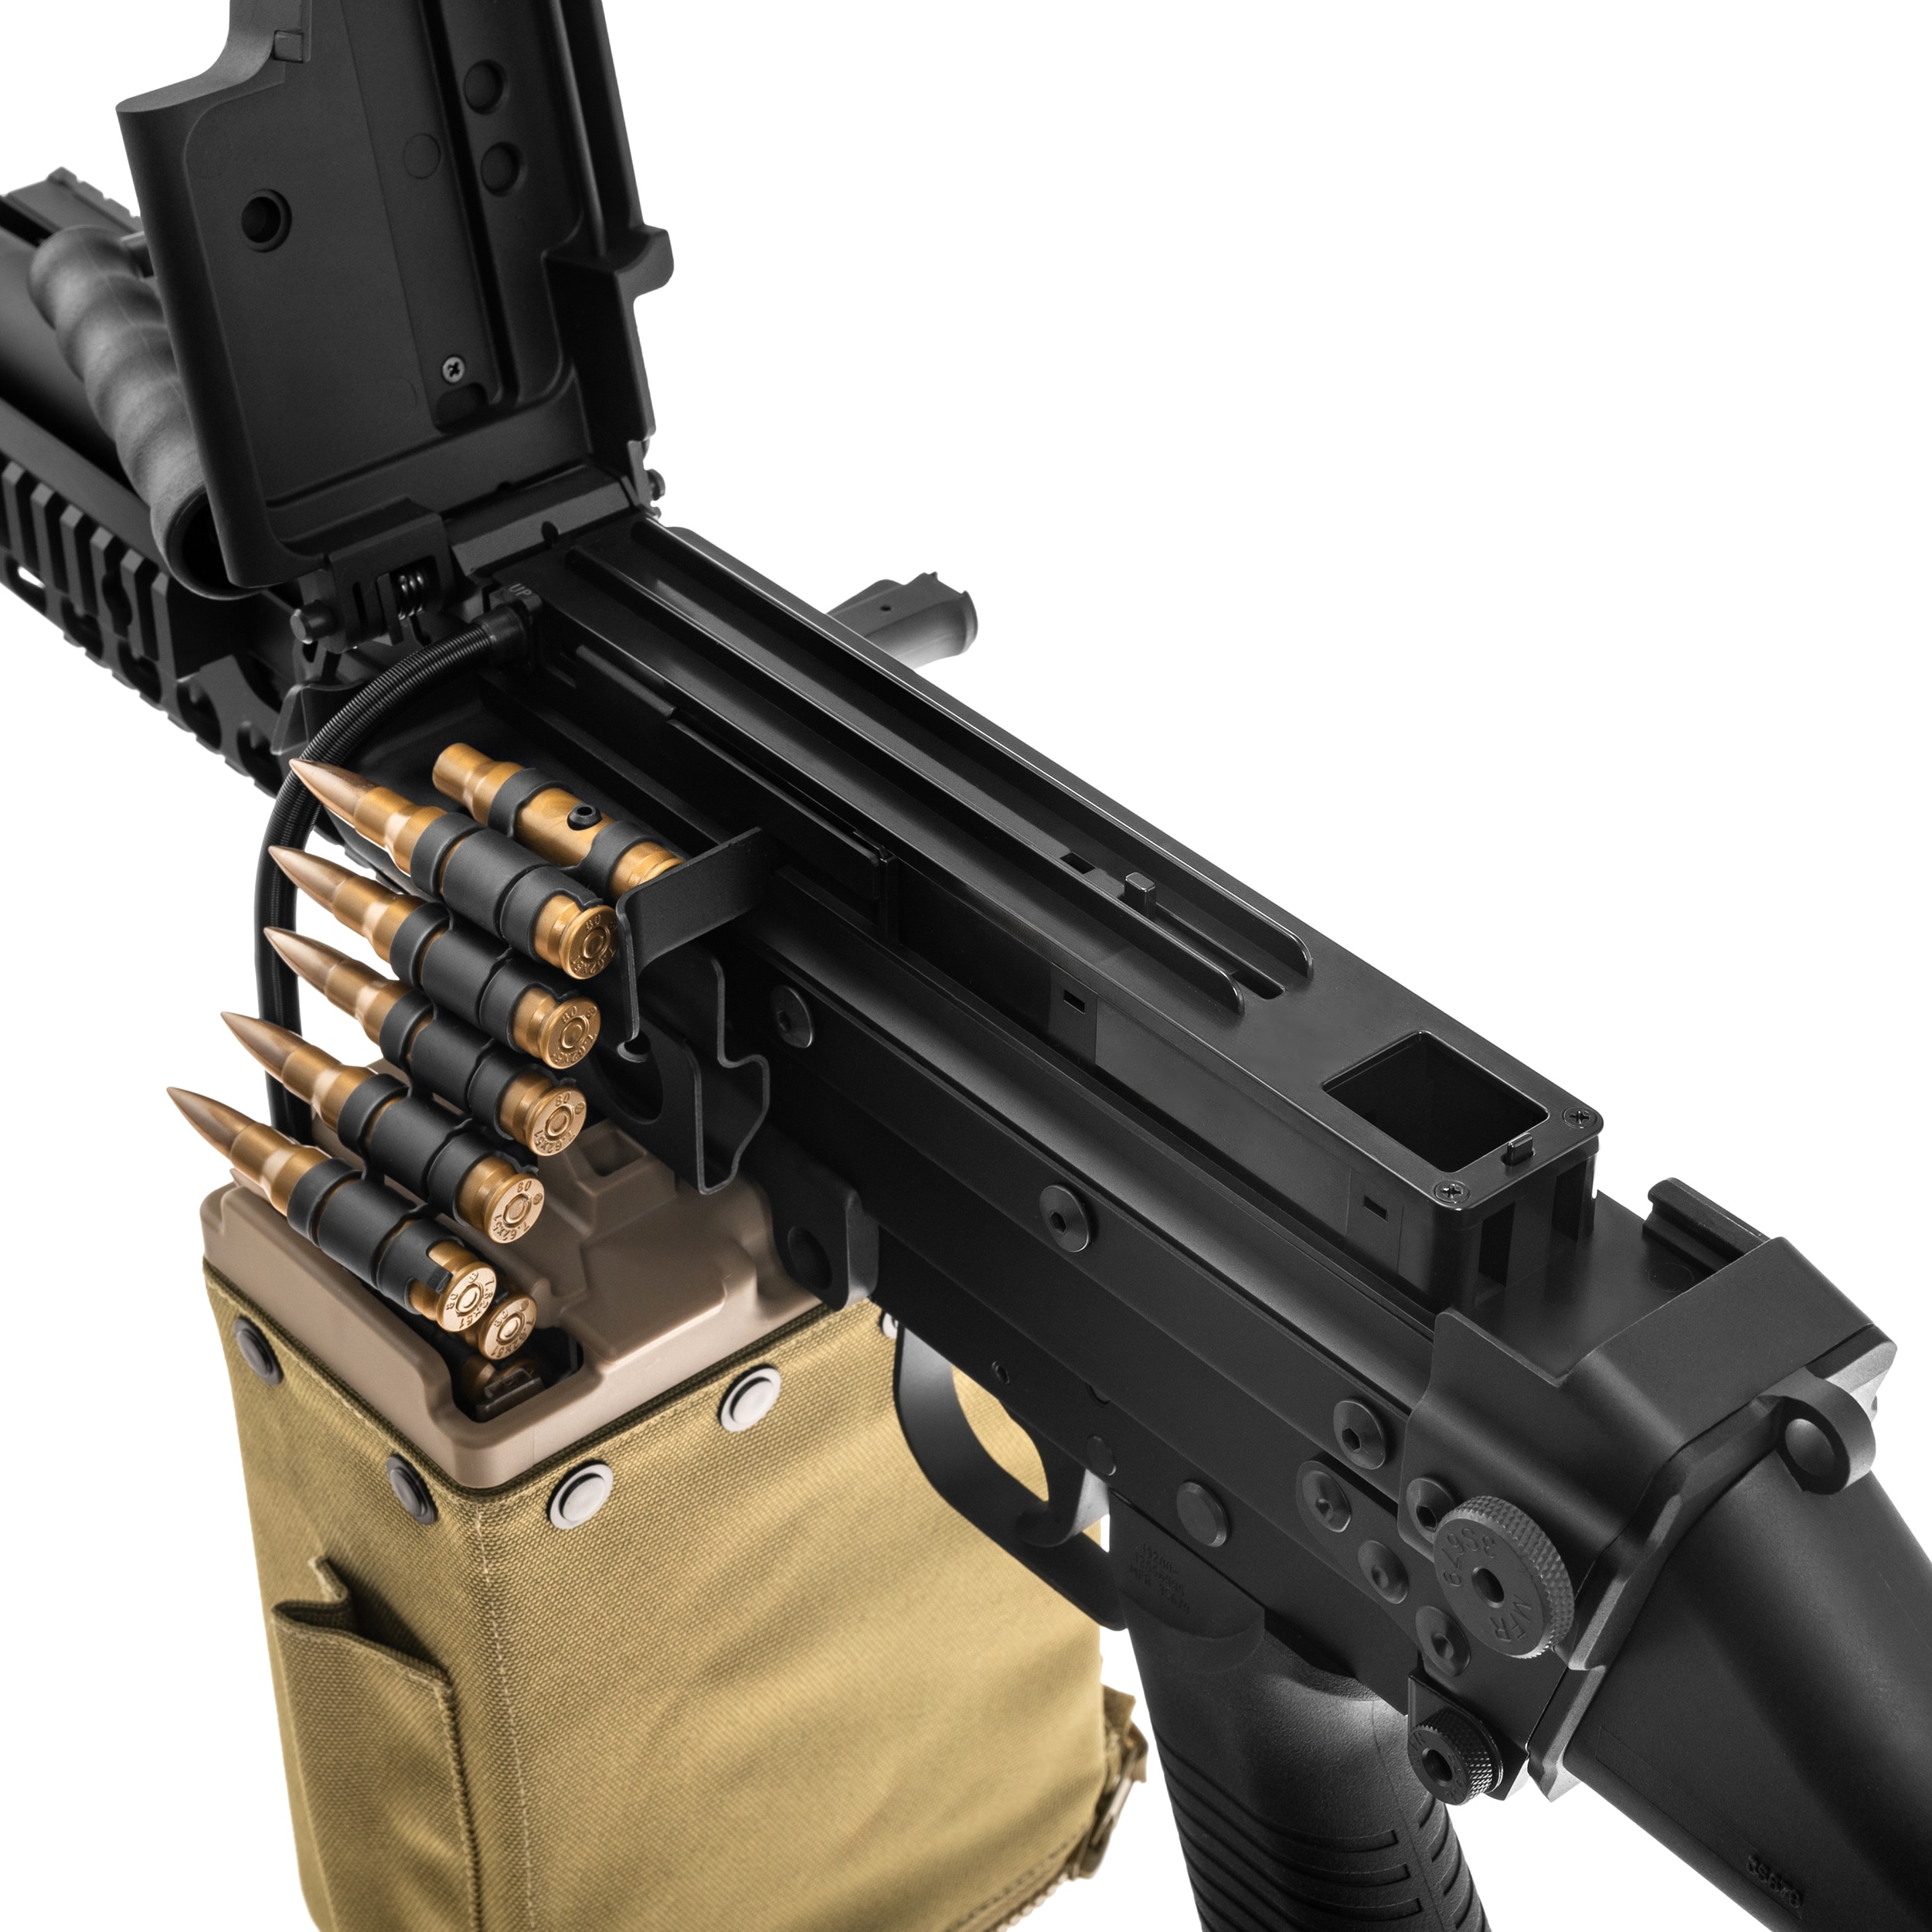 Karabin maszynowy AEG Cybergun FN MK48 - Black